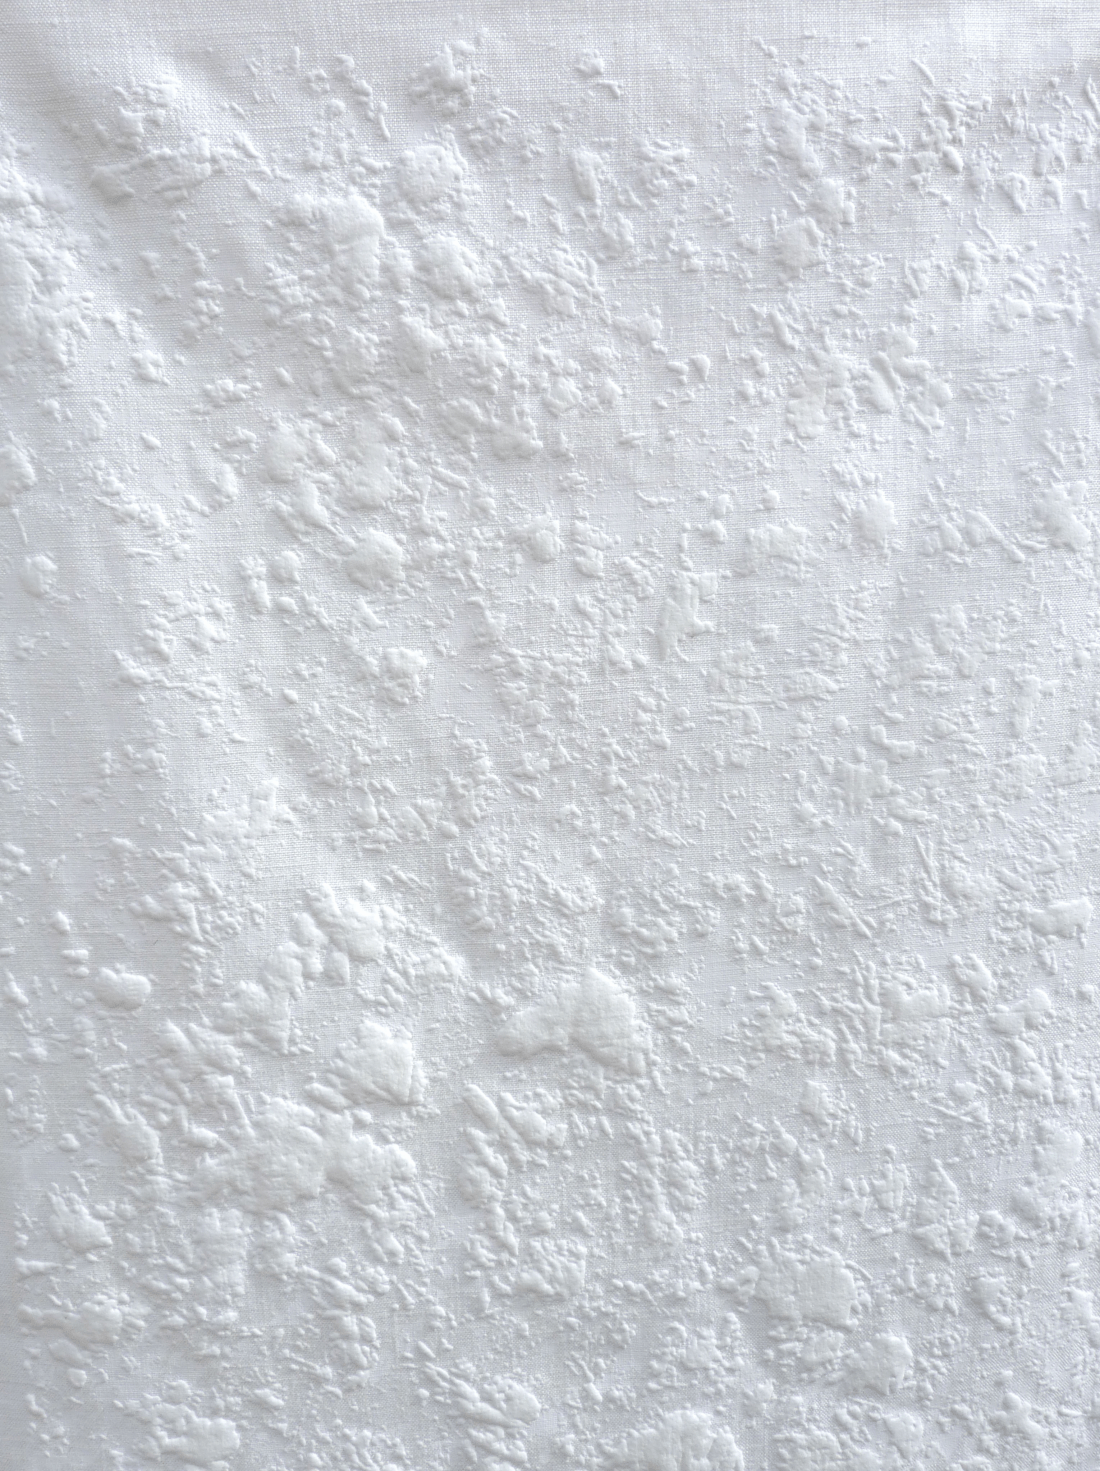 White on white snow texture